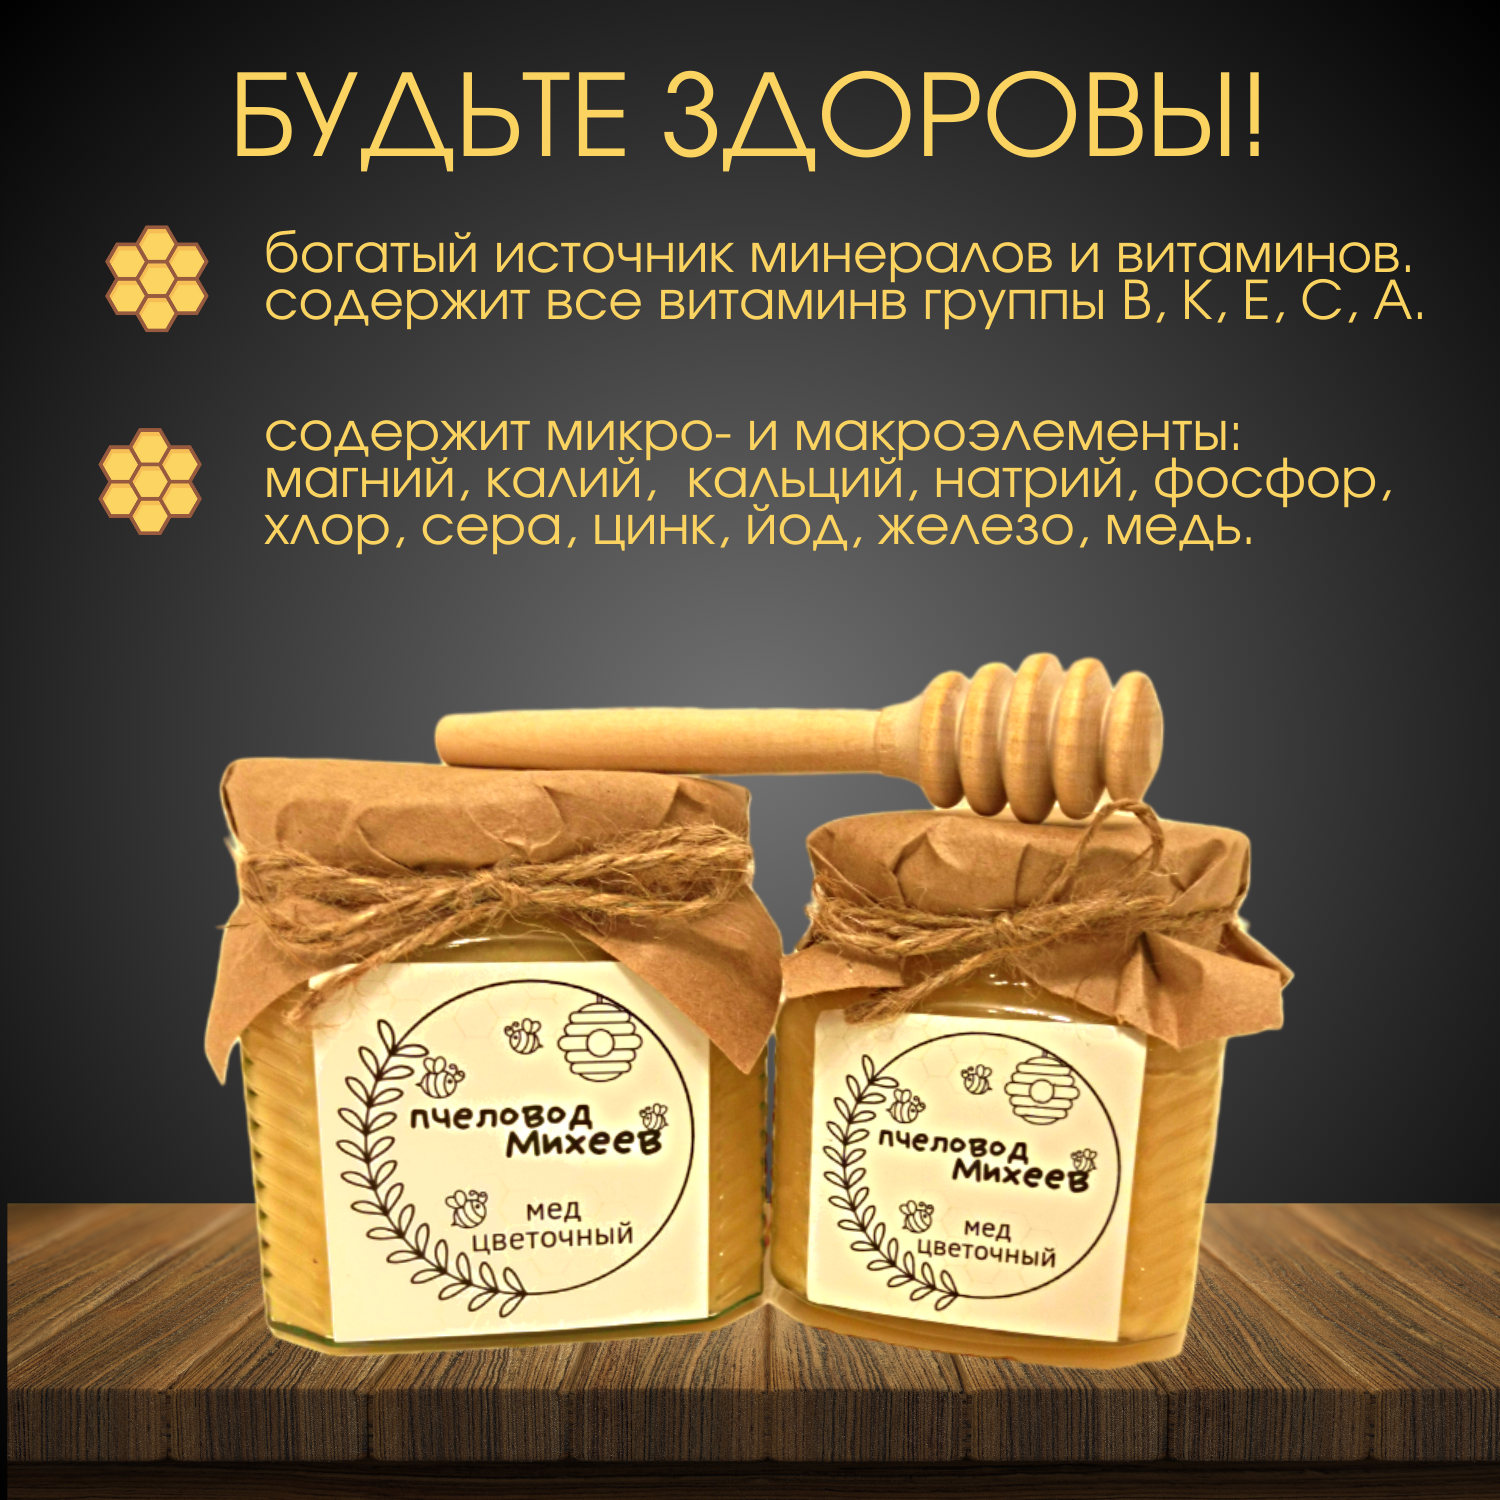 Мед цветочный натуральный без добавок "Пчеловод Михеев" 500гр - фотография № 3